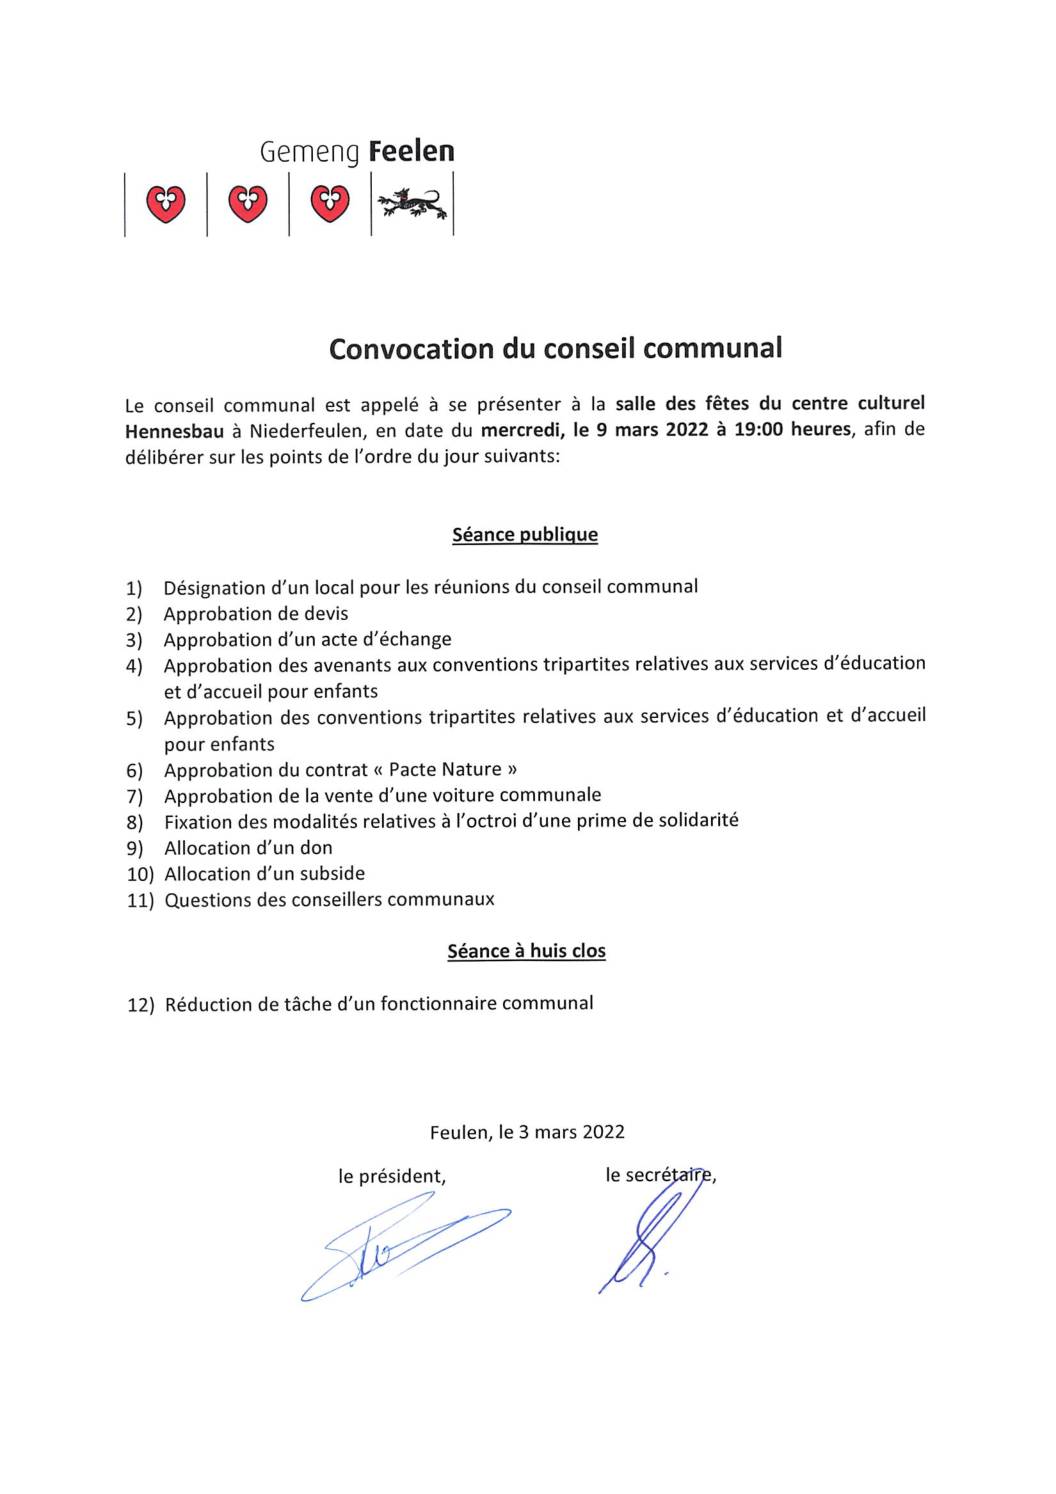 Ordre du jour de la séance du conseil communal du  9 mars 2022